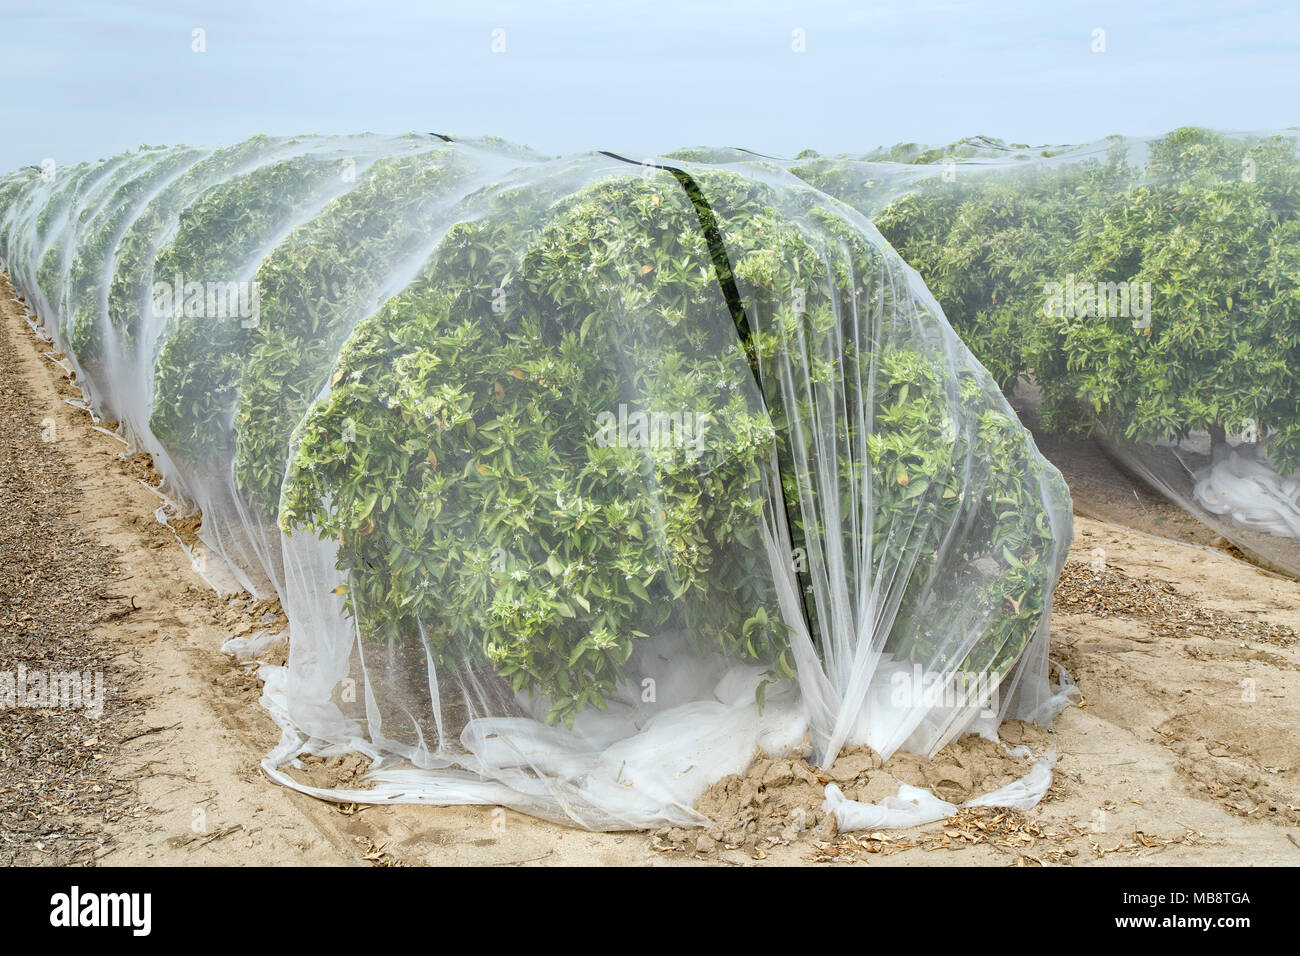 Die Verrechnung der Schutz "Clementine" Mandarin orange Orchard gegen Fremdbestäubung, Polyethylen Fine Mesh Netting, Stockfoto